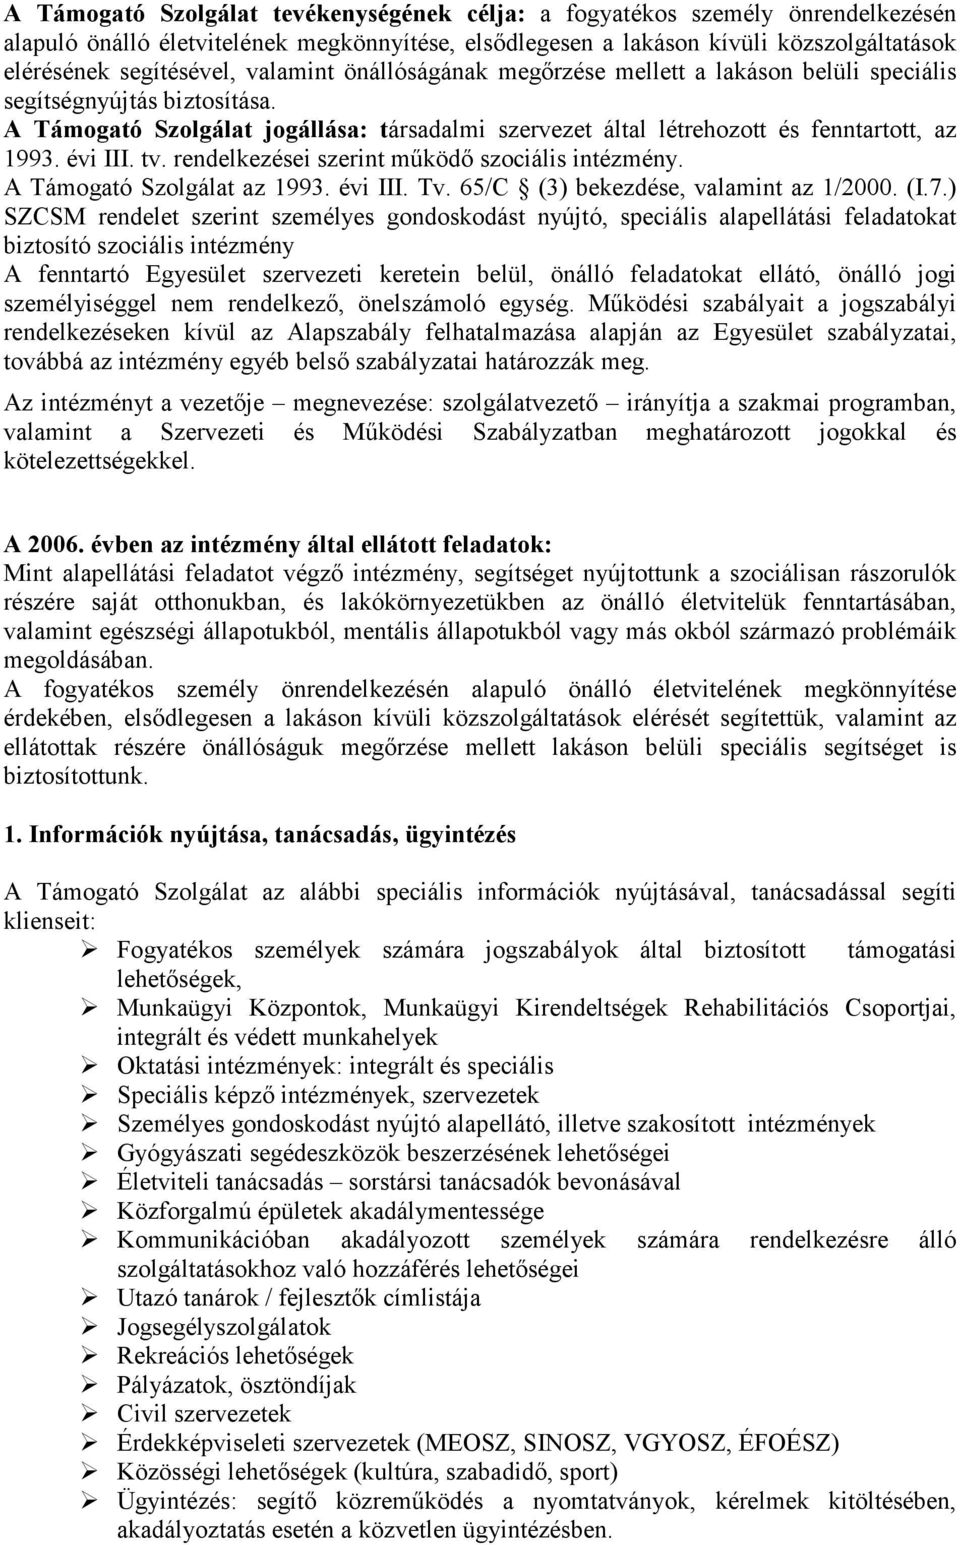 évi III. tv. rendelkezései szerint mőködı szociális intézmény. A Támogató Szolgálat az 1993. évi III. Tv. 65/C (3) bekezdése, valamint az 1/2000. (I.7.